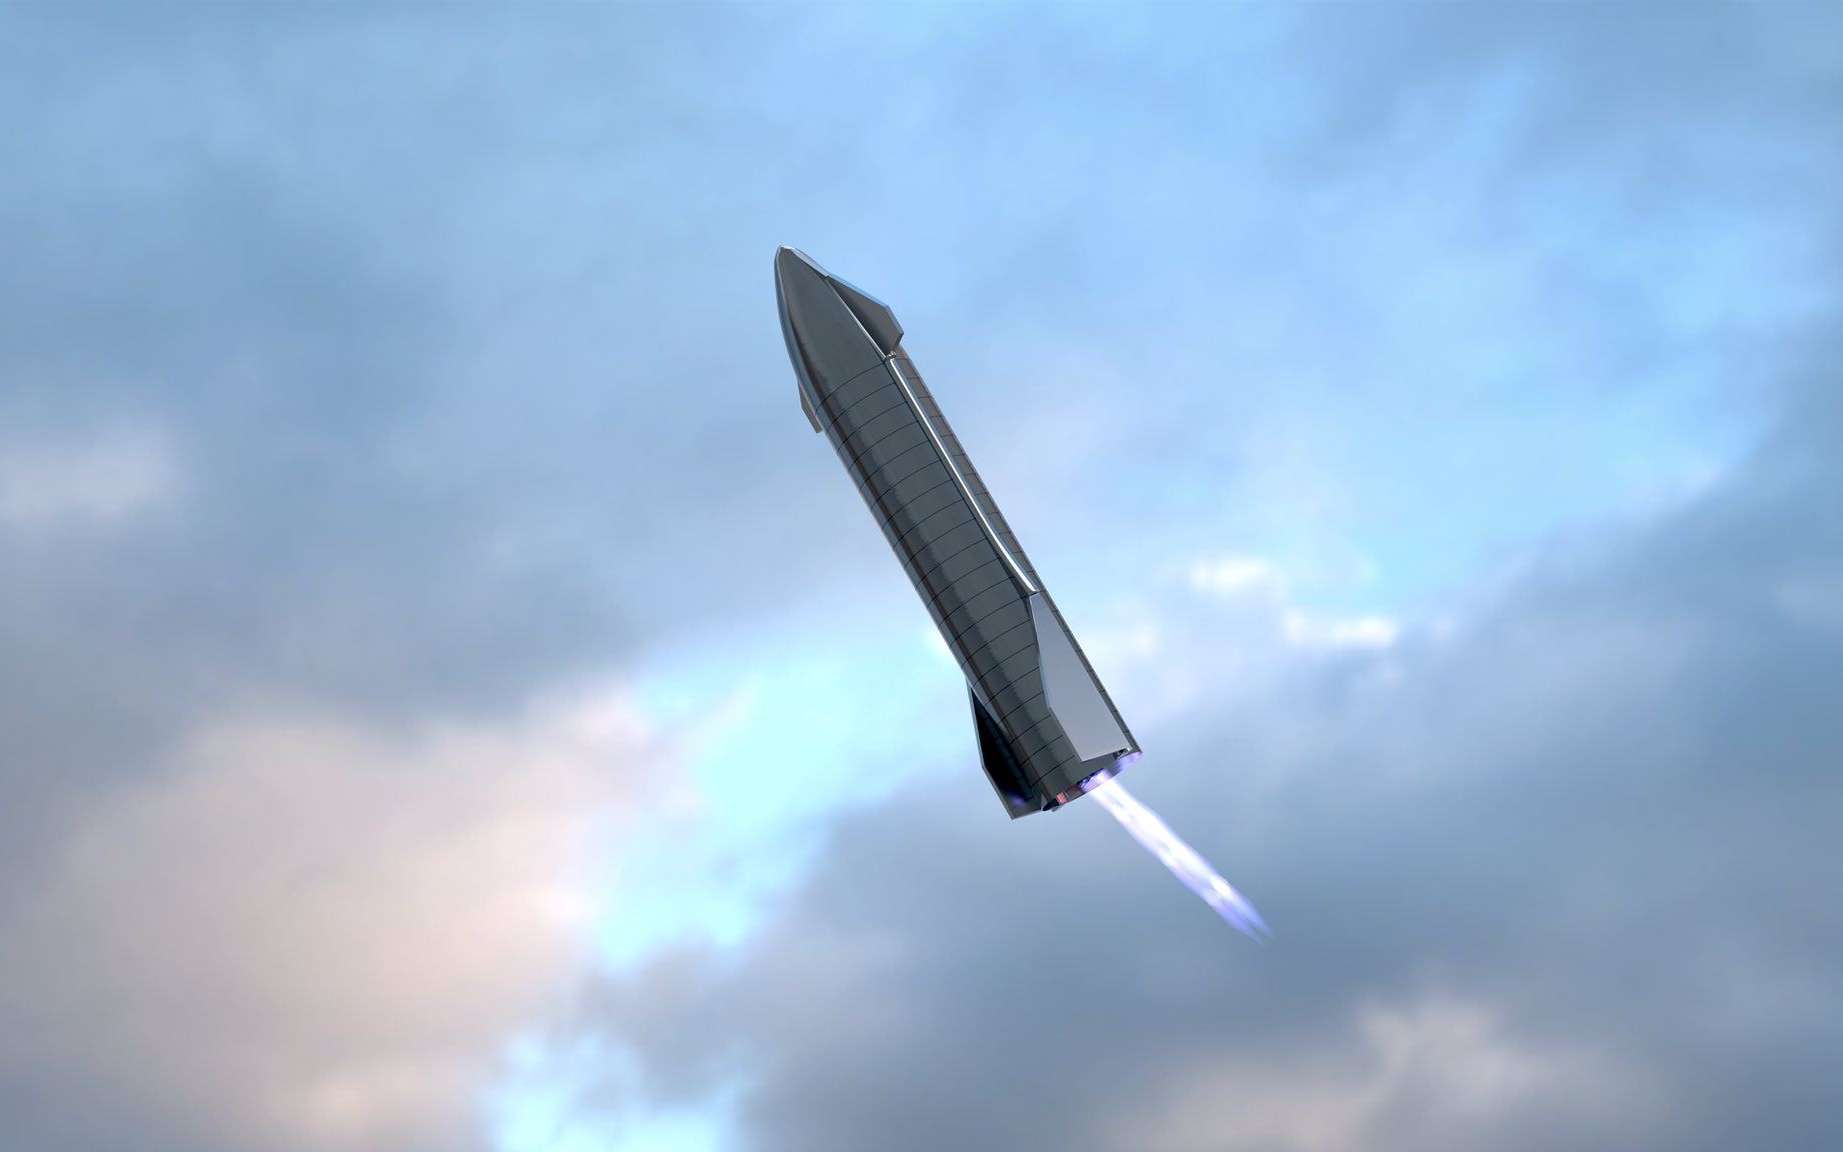 SpaceX publie une très belle vidéo détaillée du vol de son prototype SN8 de Starship